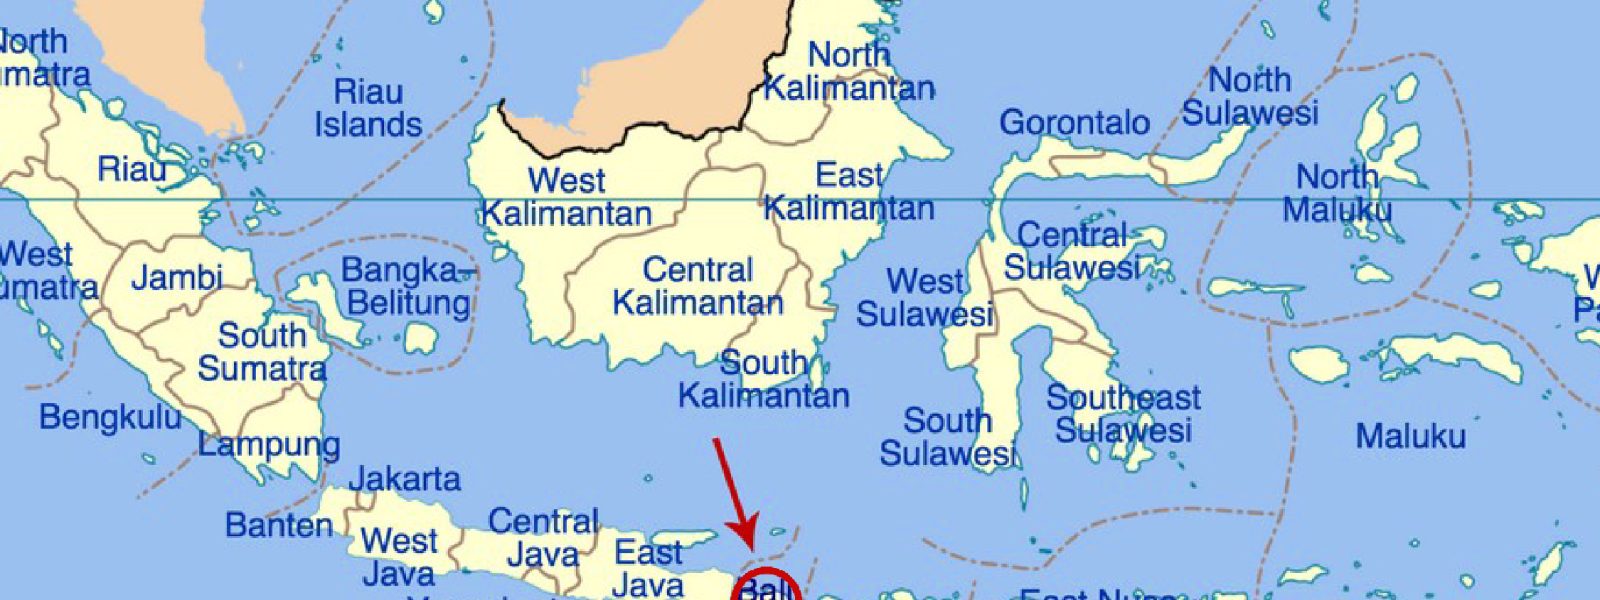 where Bali located